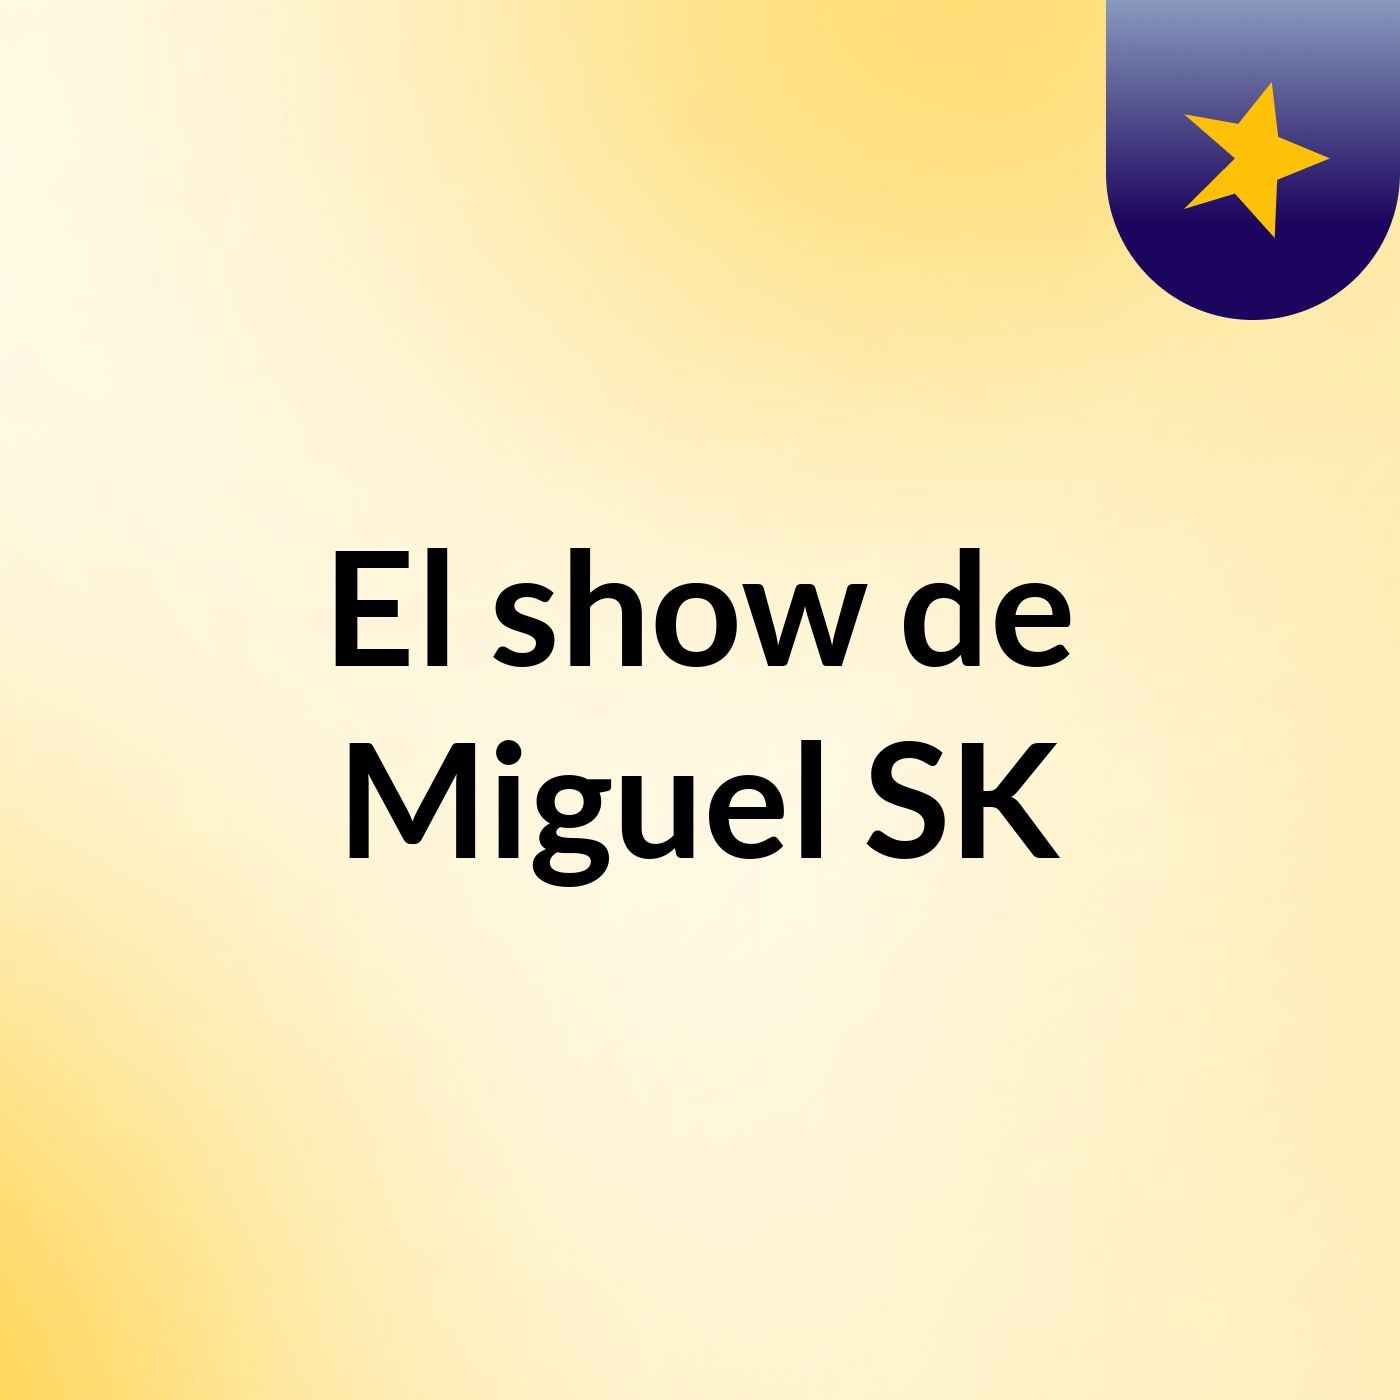 El show de Miguel SK